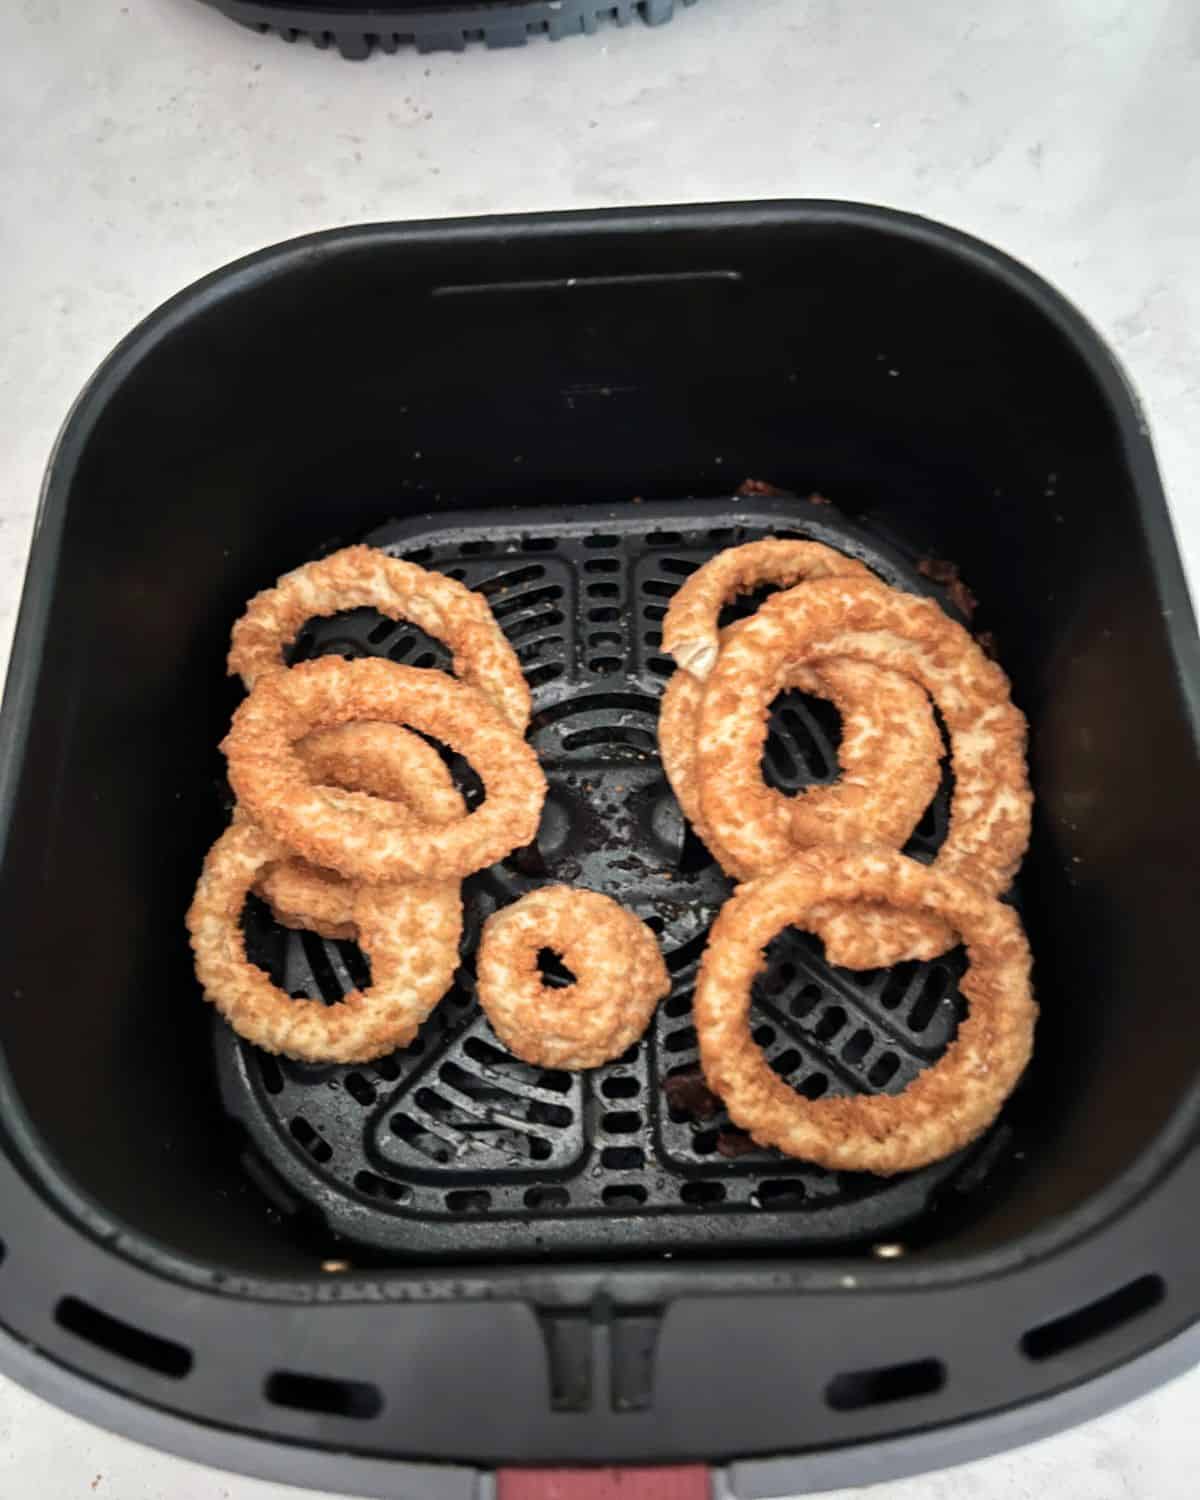 Frozen onion rings in air fryer basket. 